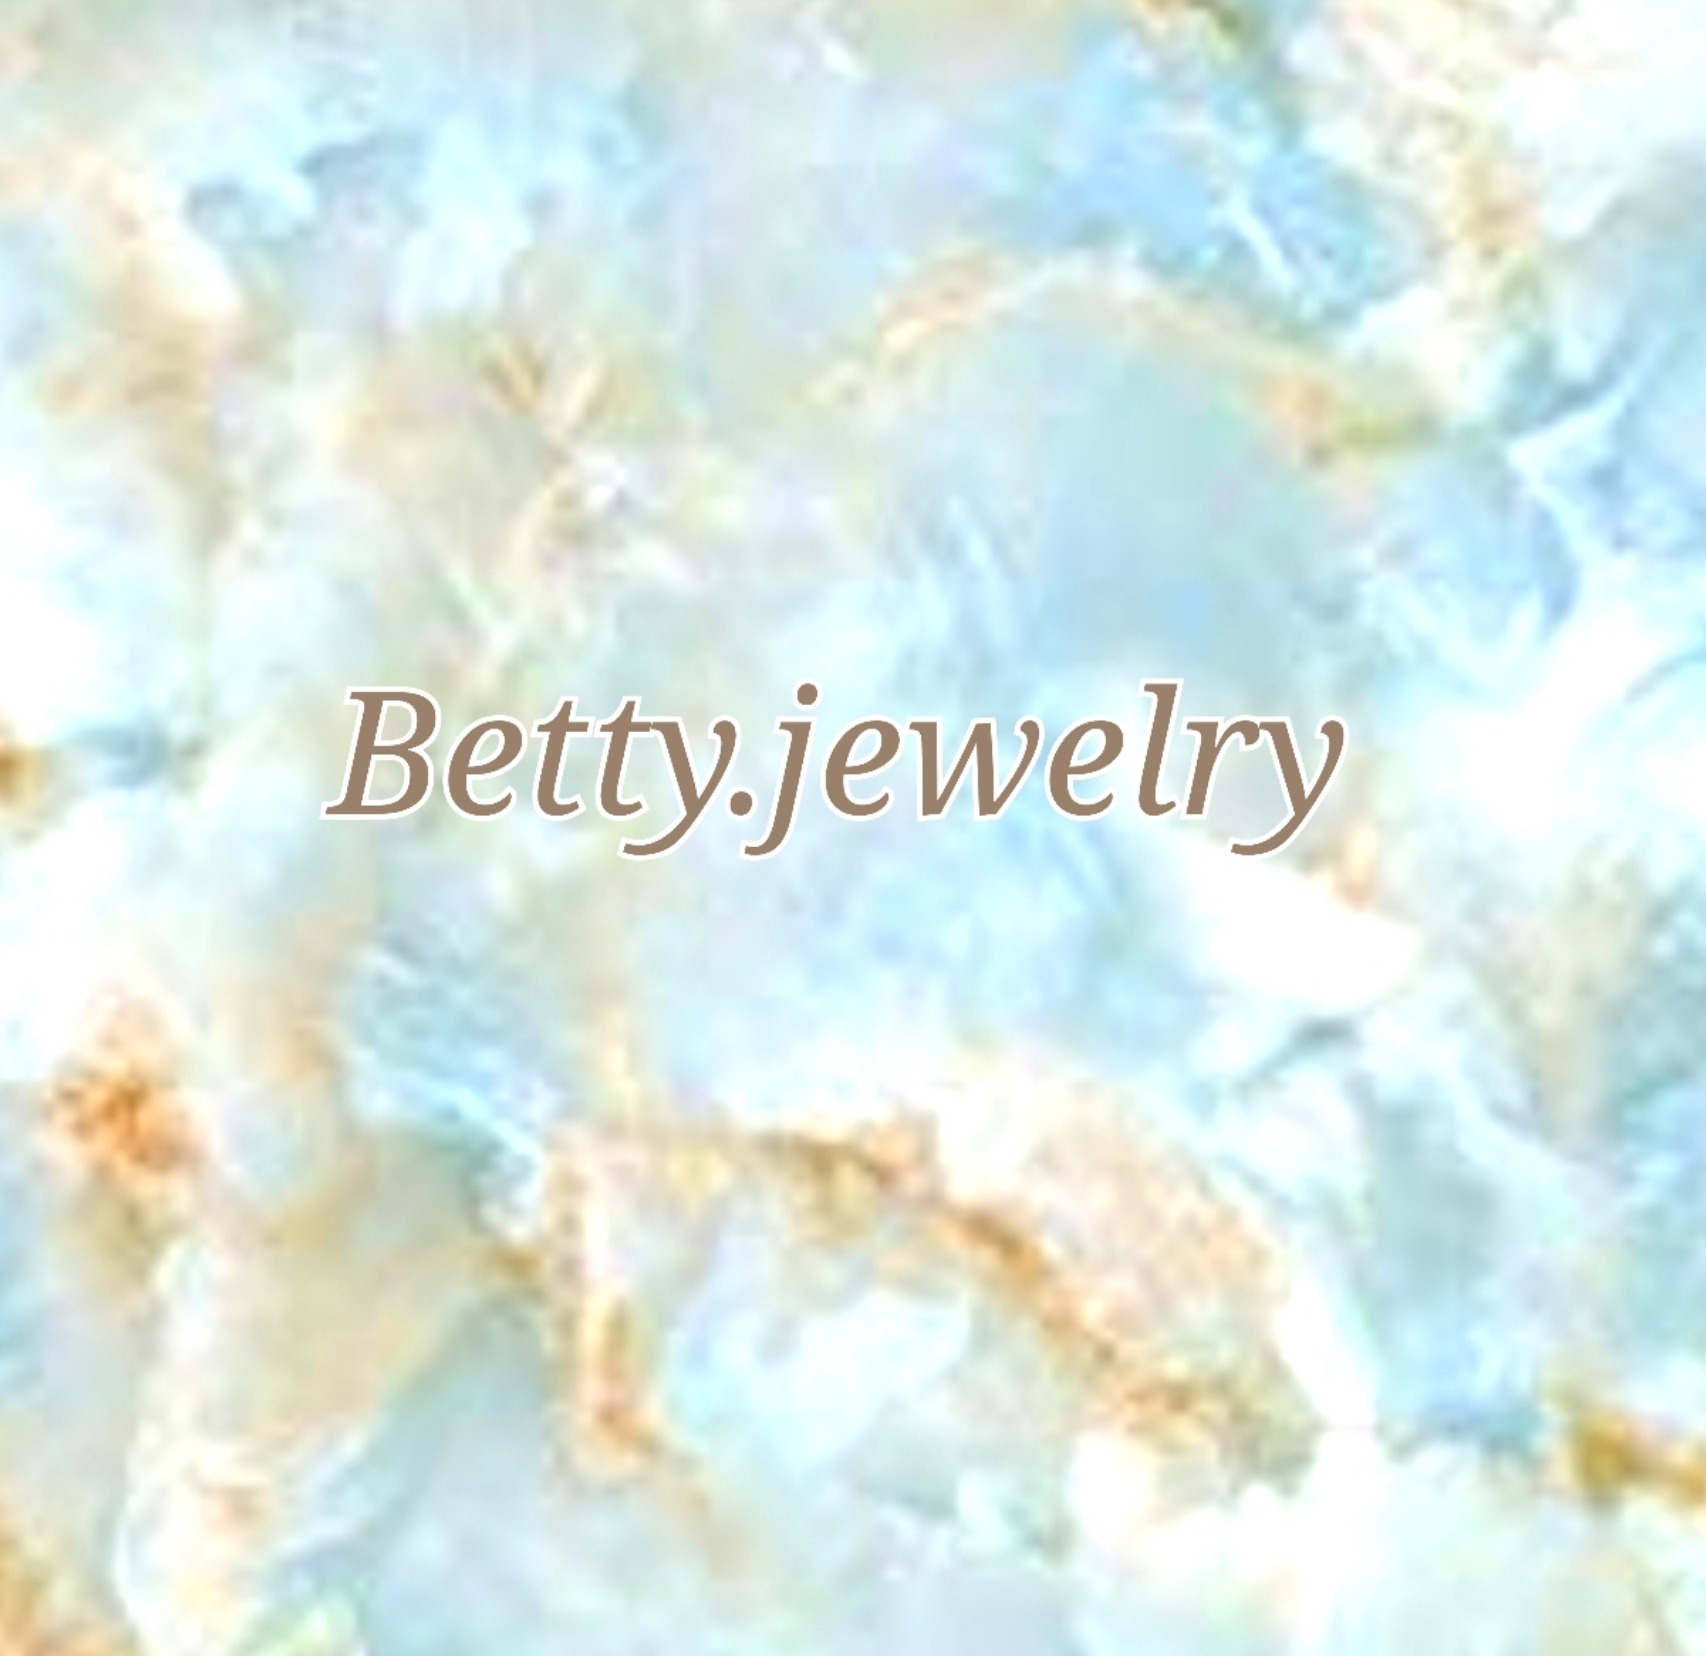 Betty.jewelry